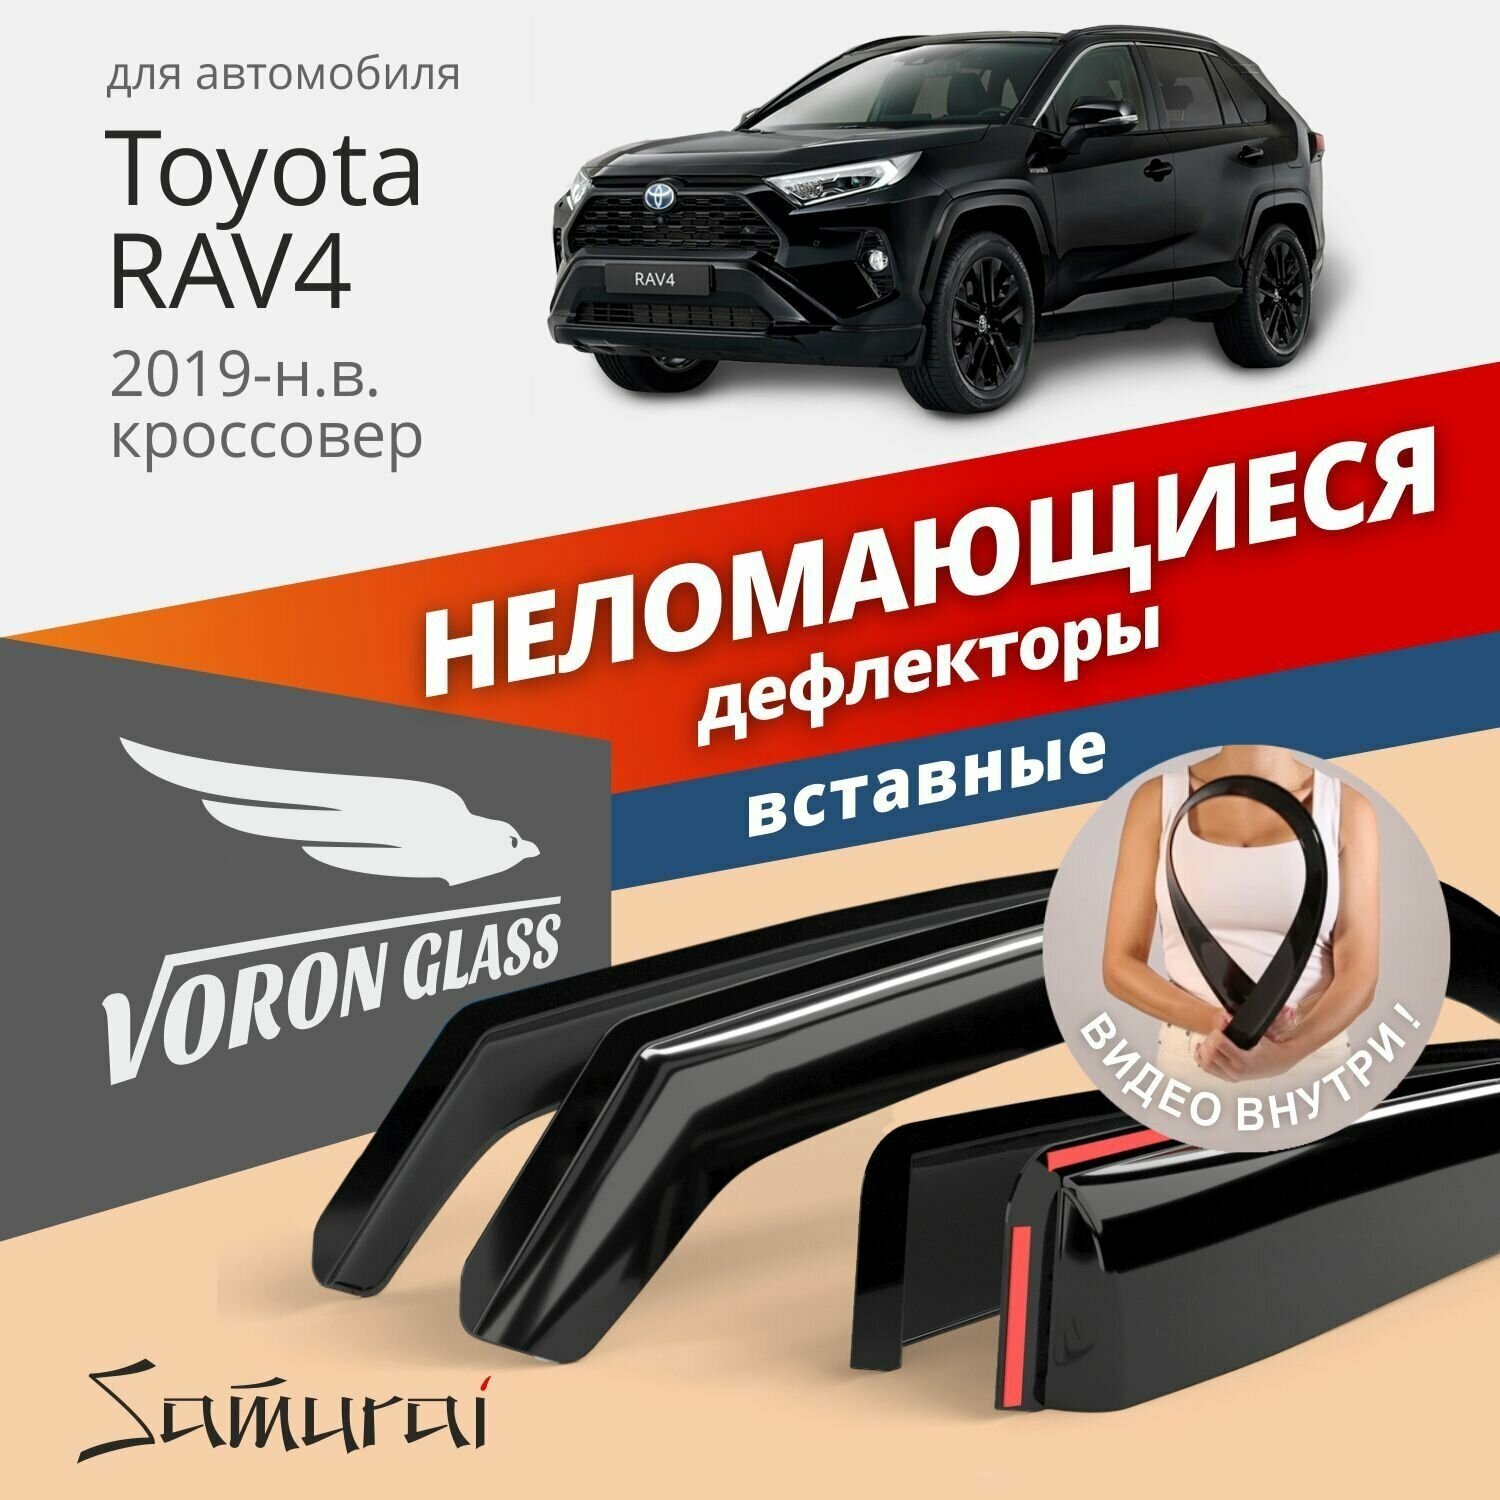 Дефлекторы окон неломающиеся Voron Glass серия Samurai для Toyota RAV4 V 2019-н. в. 4 шт.